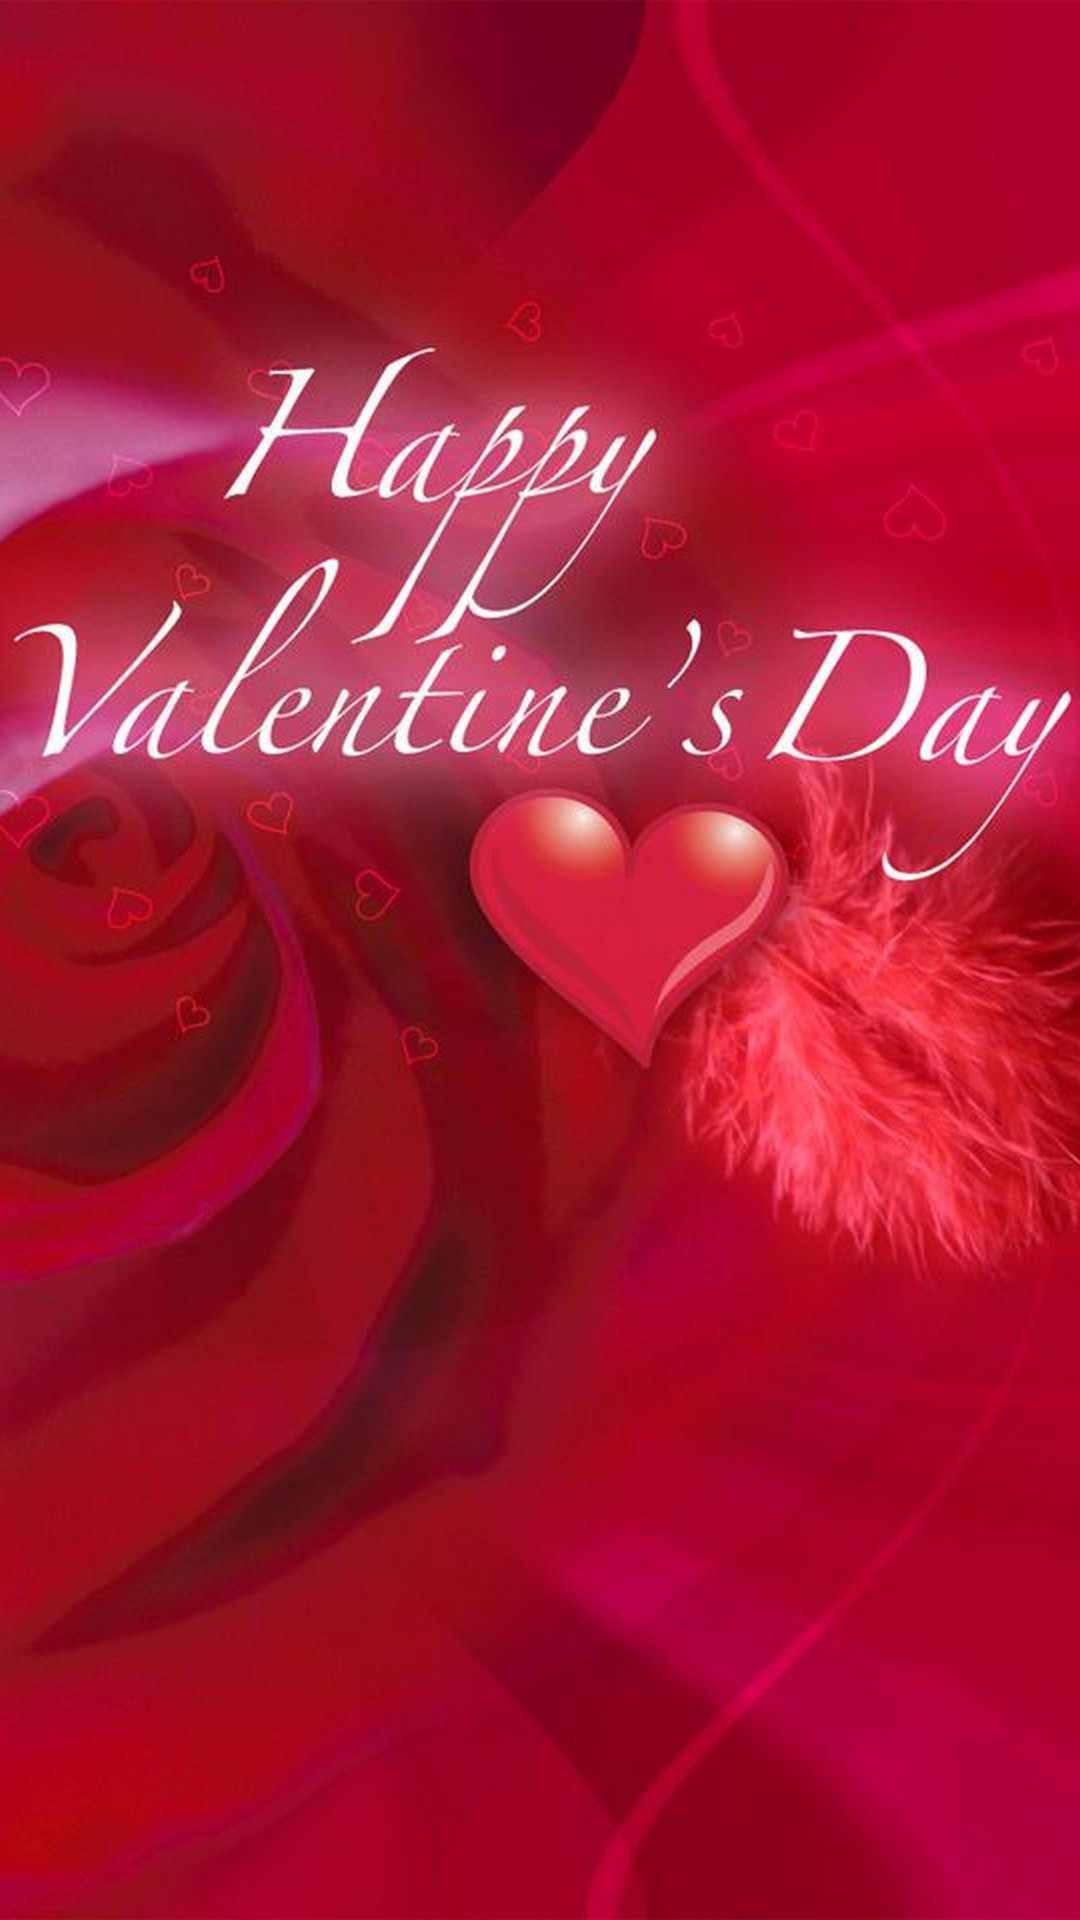 Best Happy Valentine Day iPhone Wallpaper resolution 1080x1920